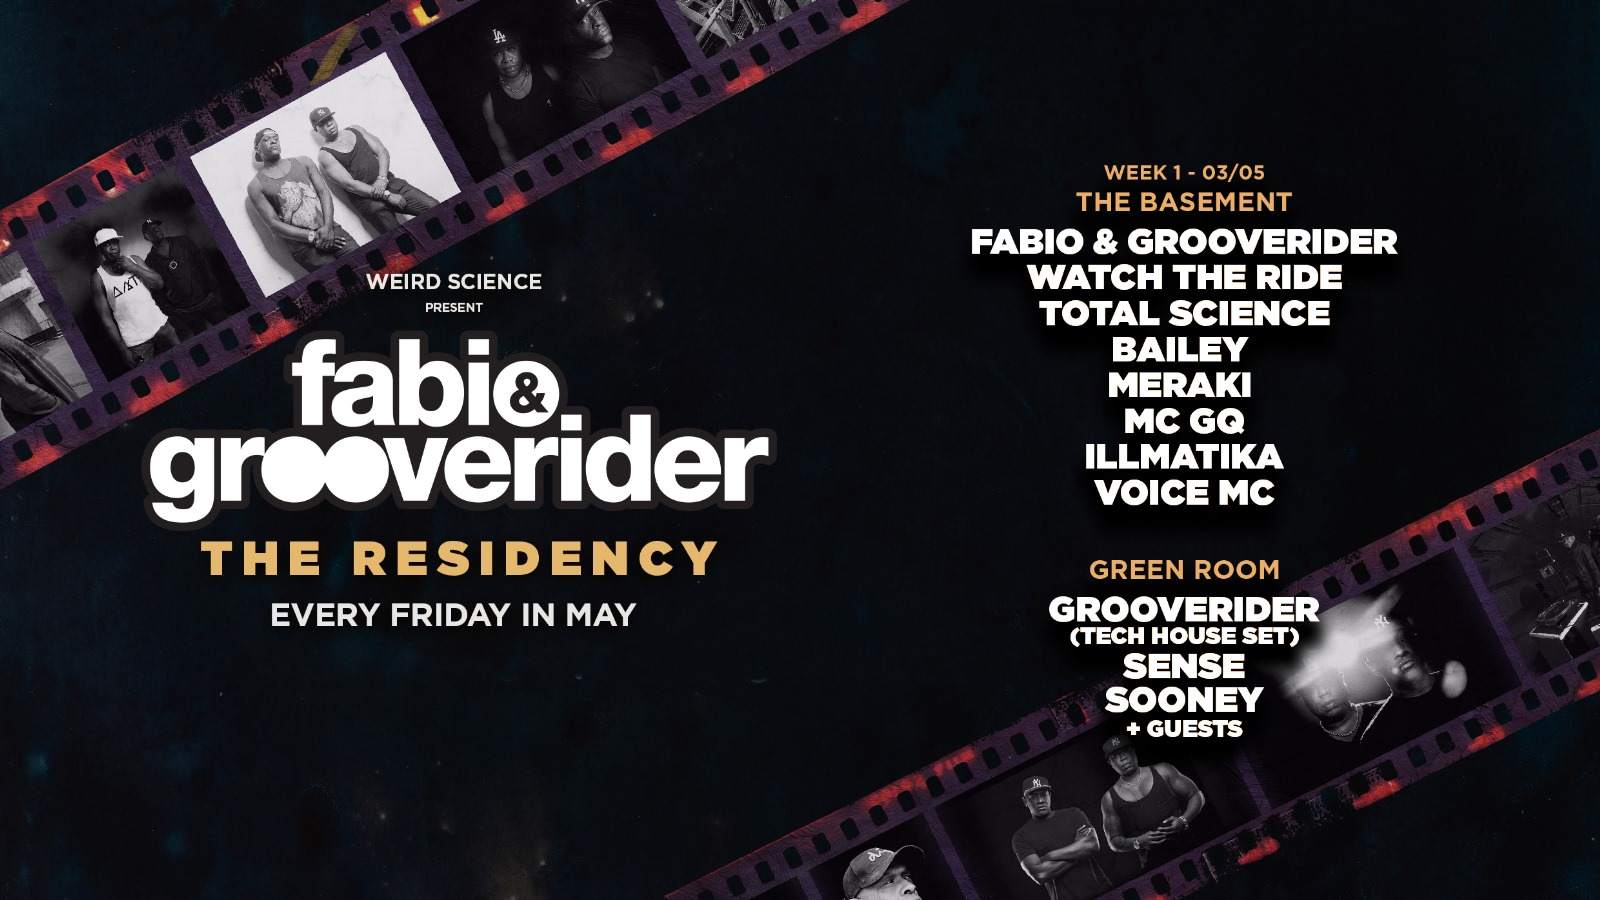 Fabio & Grooverider : The Residency (Week 1) - Página frontal